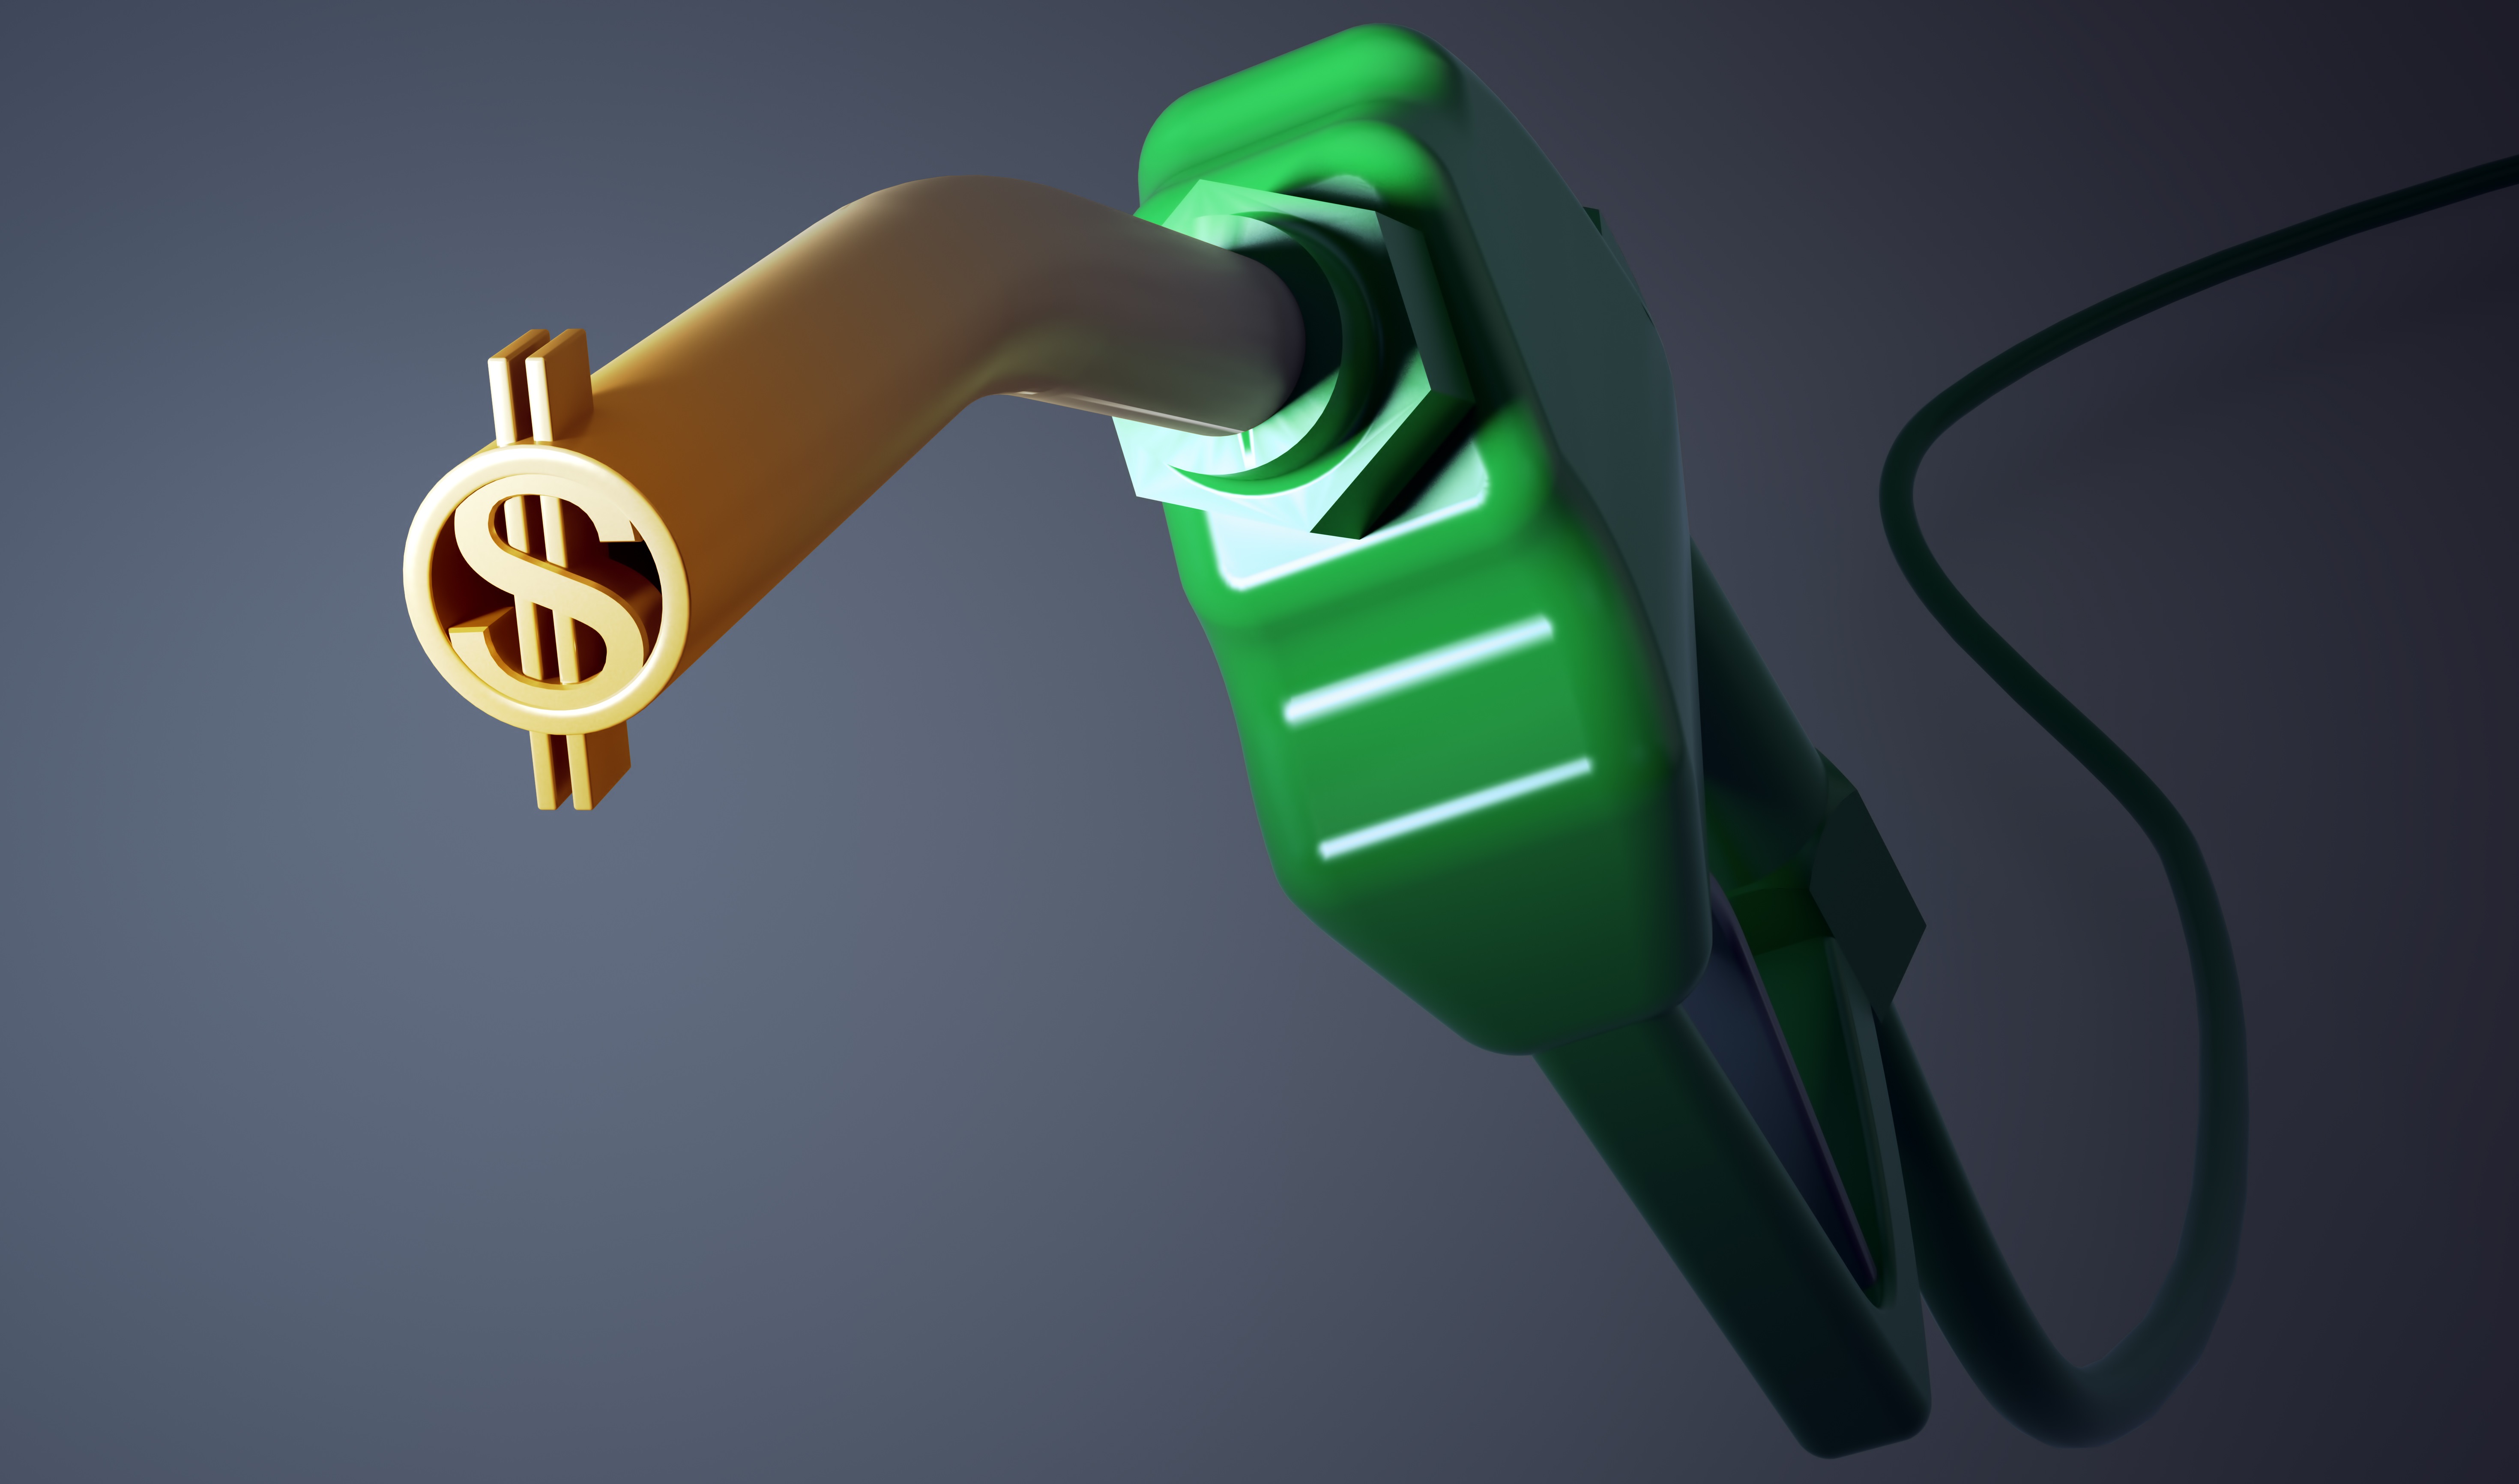  Secretarías federales tienen 2,738 mdp para gastar en gasolina